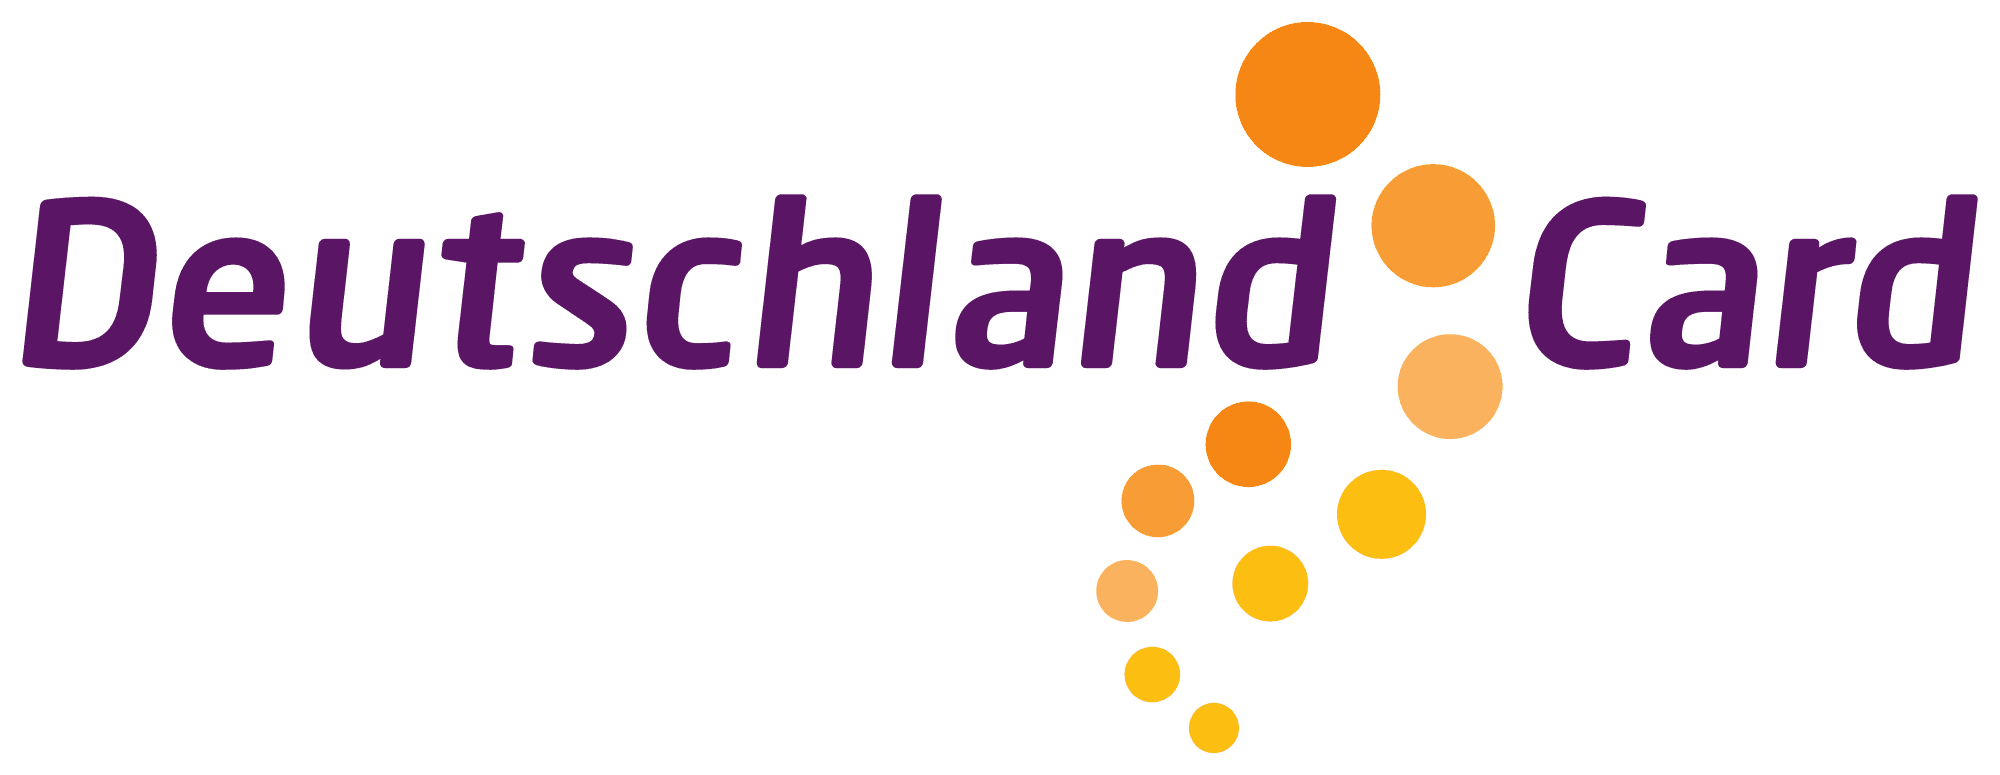 2000px-DeutschlandCard_logo.svg